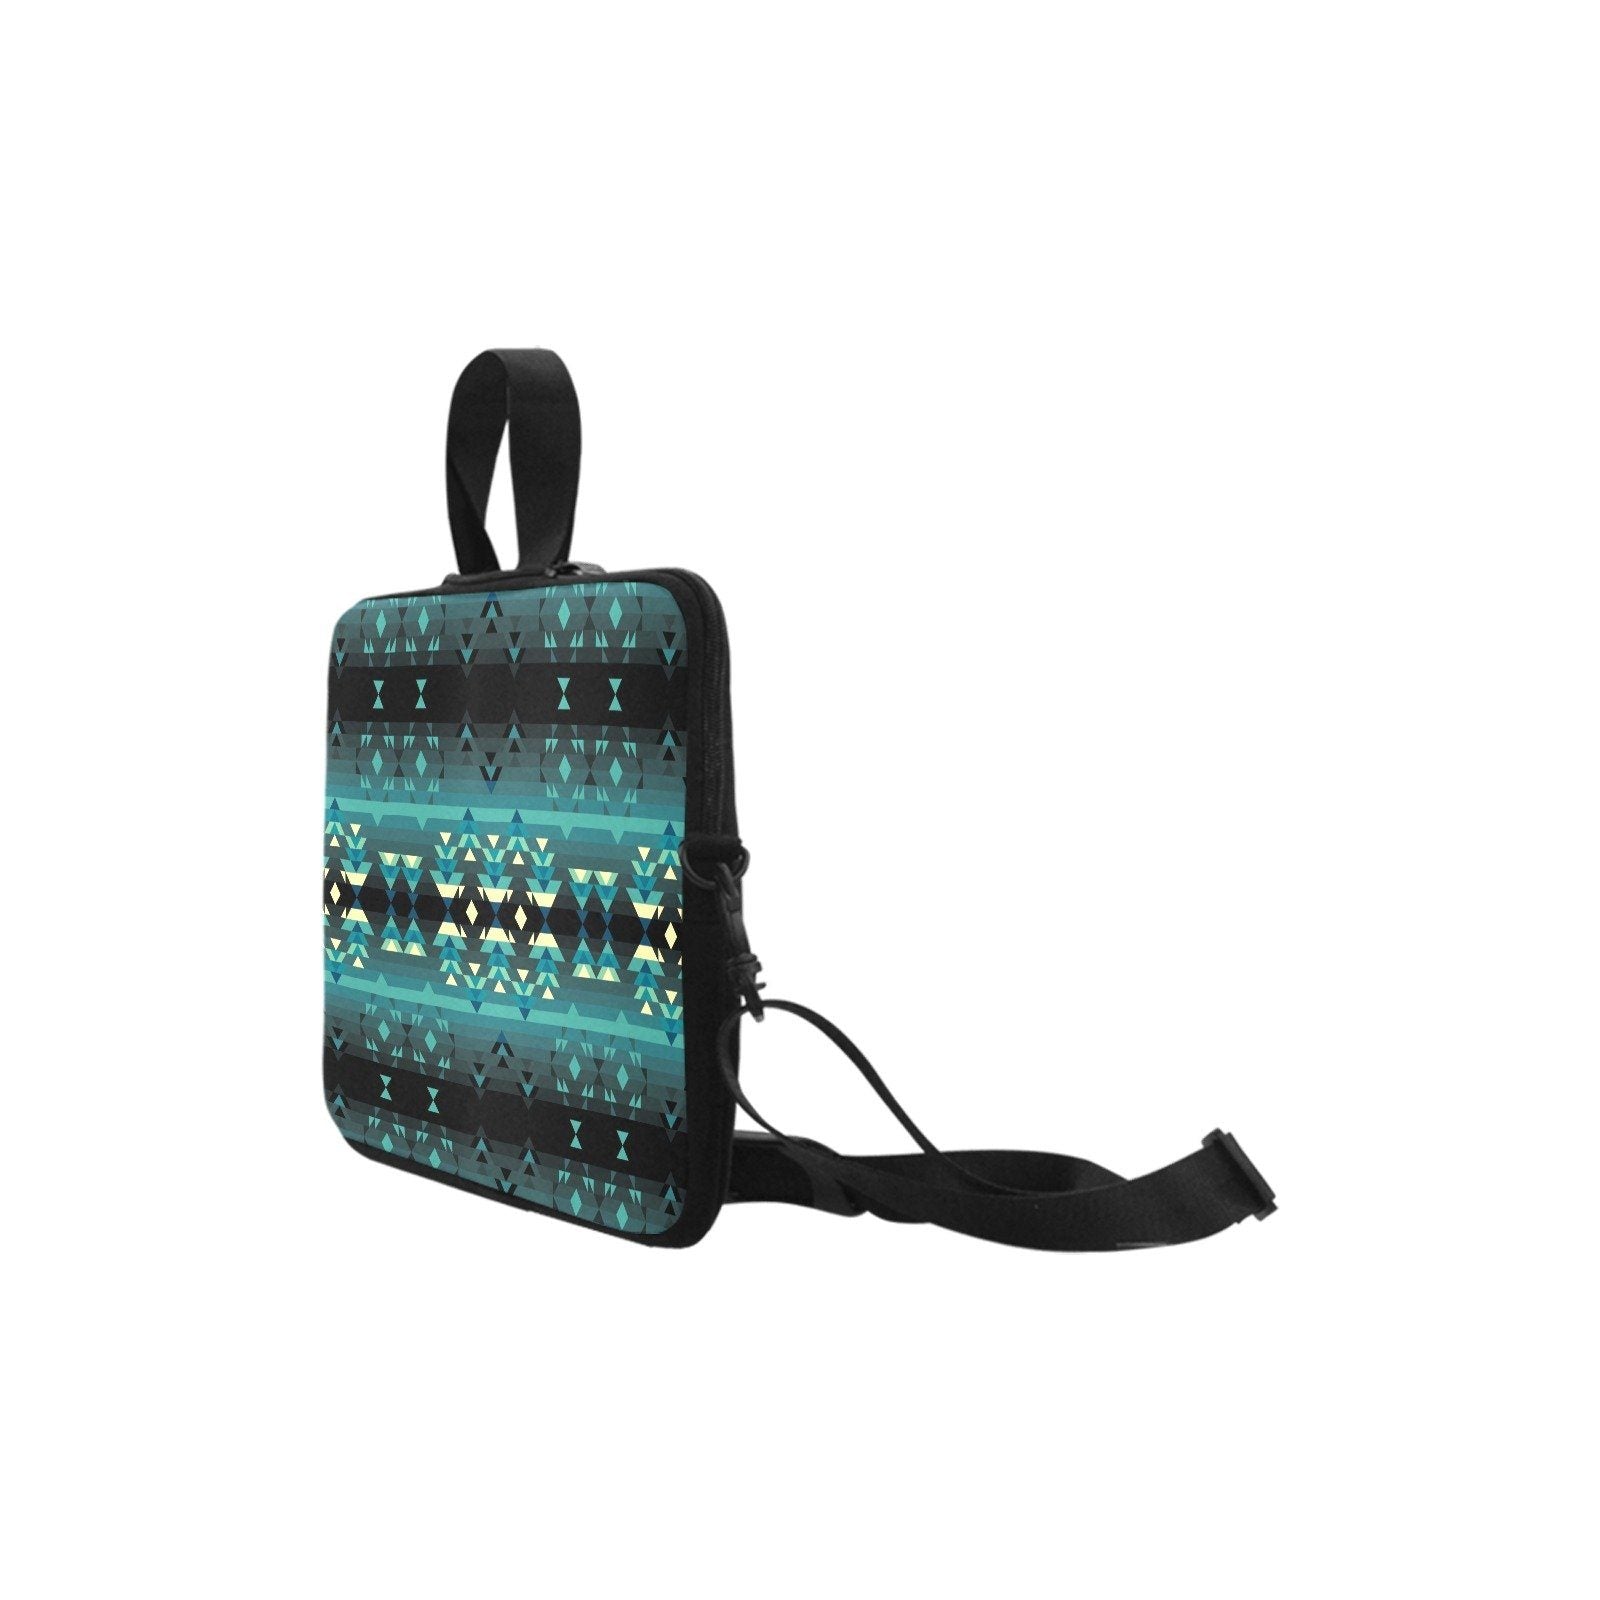 Inspire Green Laptop Handbags 17" bag e-joyer 